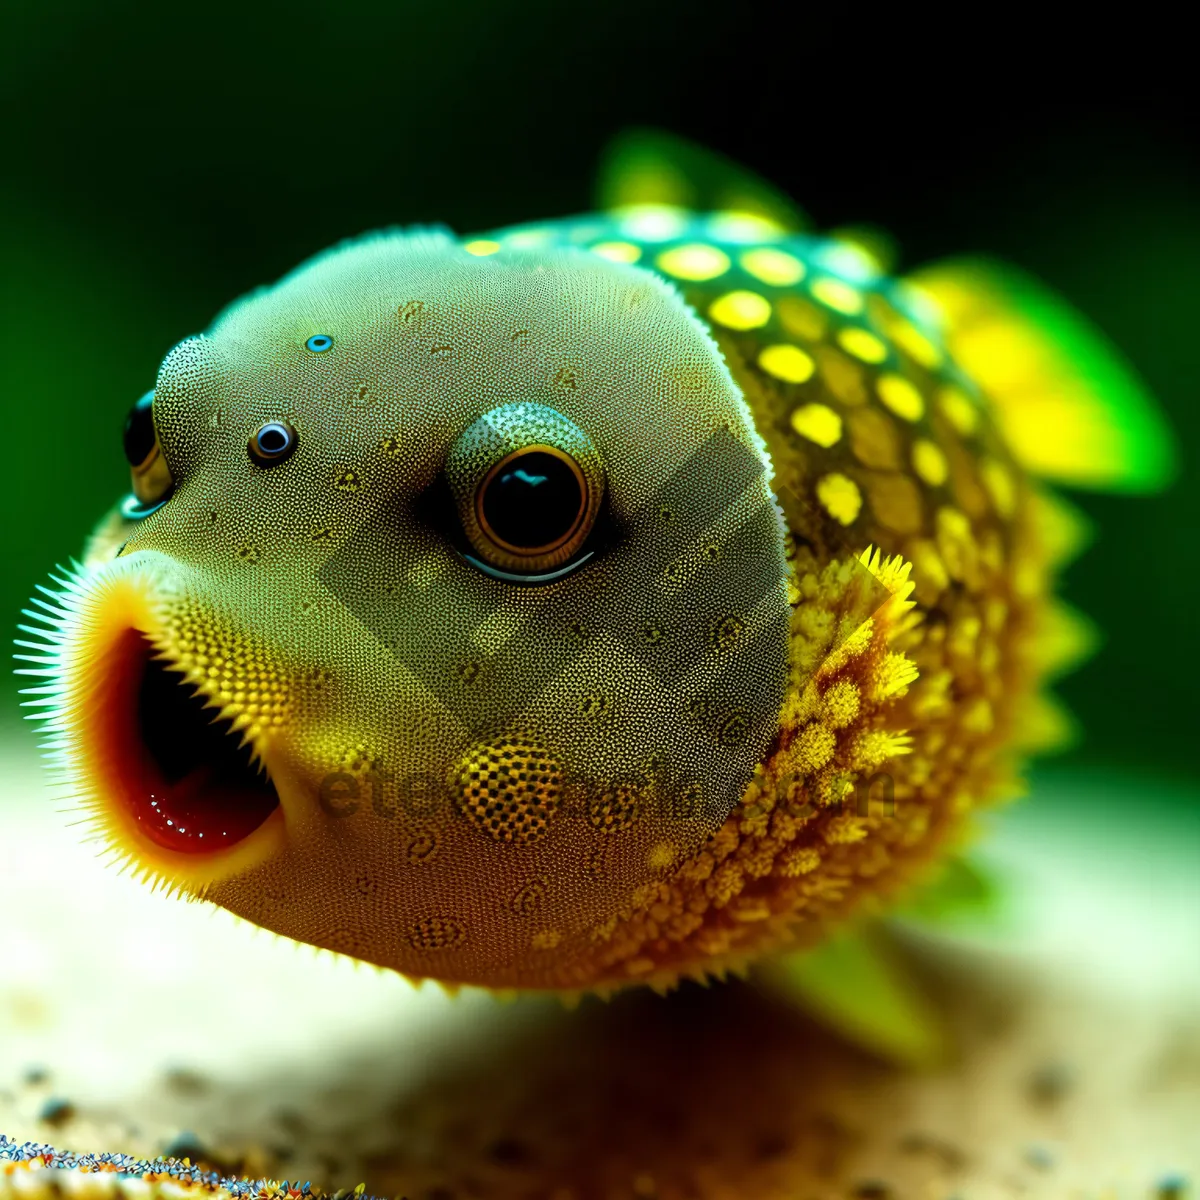 Picture of Vibrant Tropical Fish in Underwater Aquarium